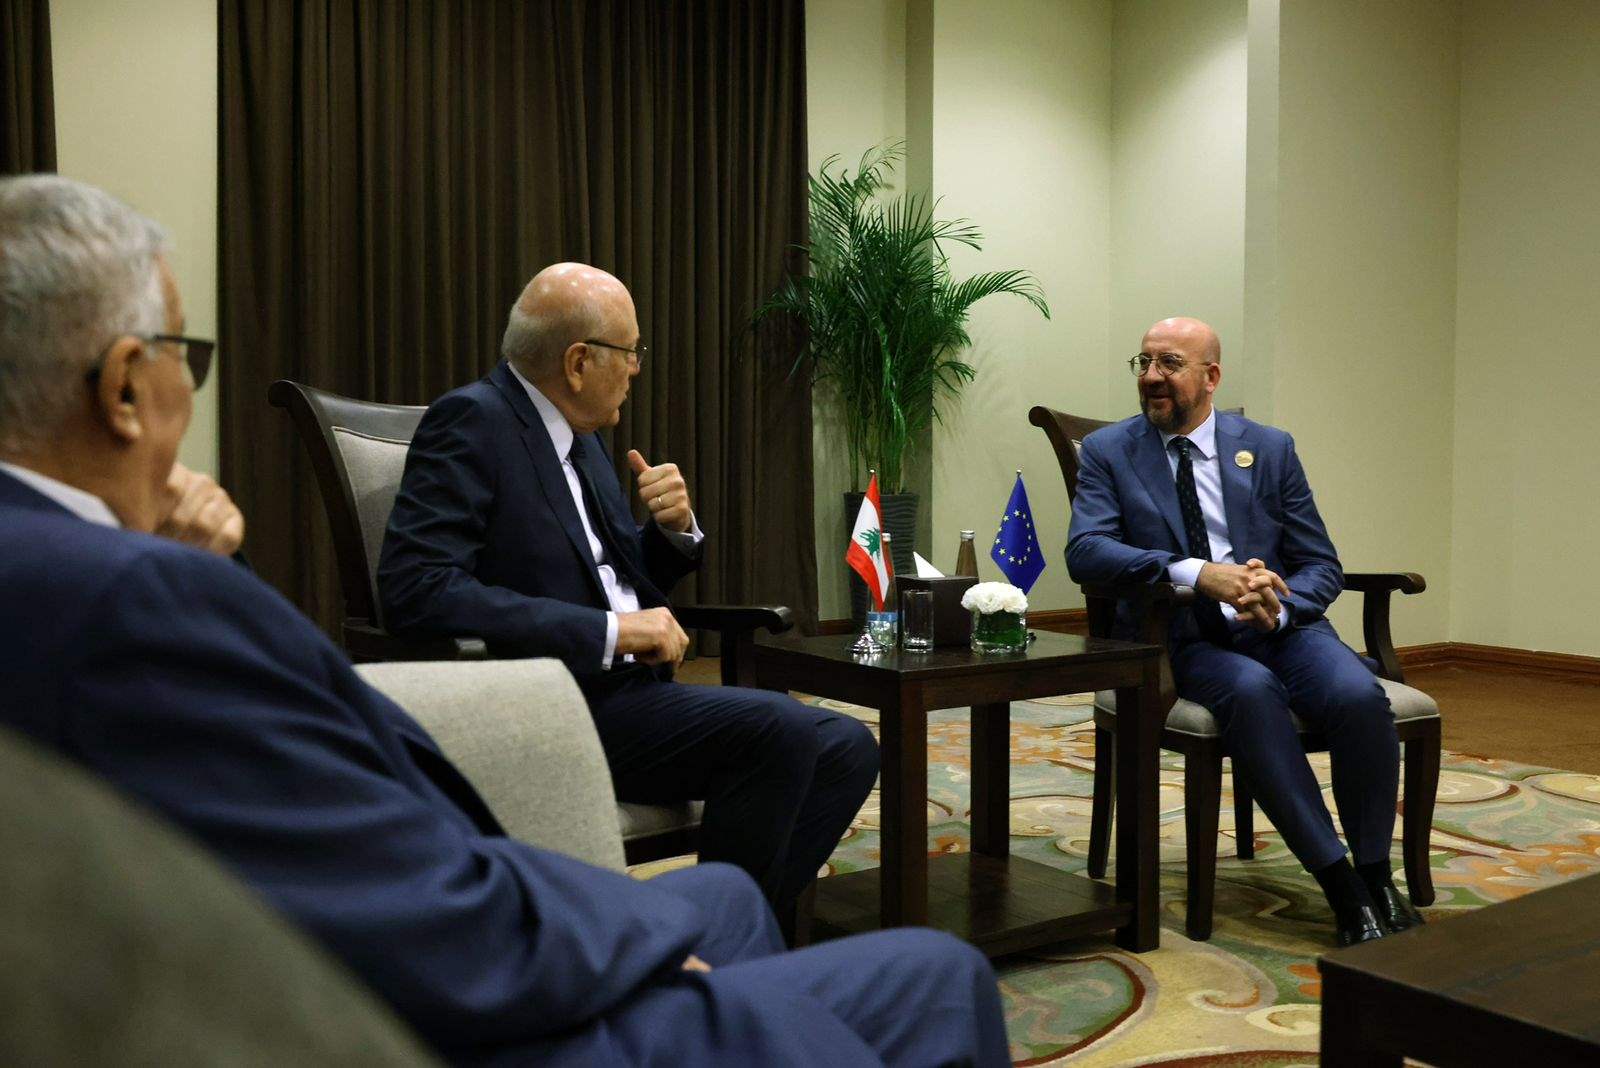  رئيس المجلس الاوروبي زار ميقاتي في الأردن: نتفهم الموقف اللبناني من مسألة النازحين السوريين